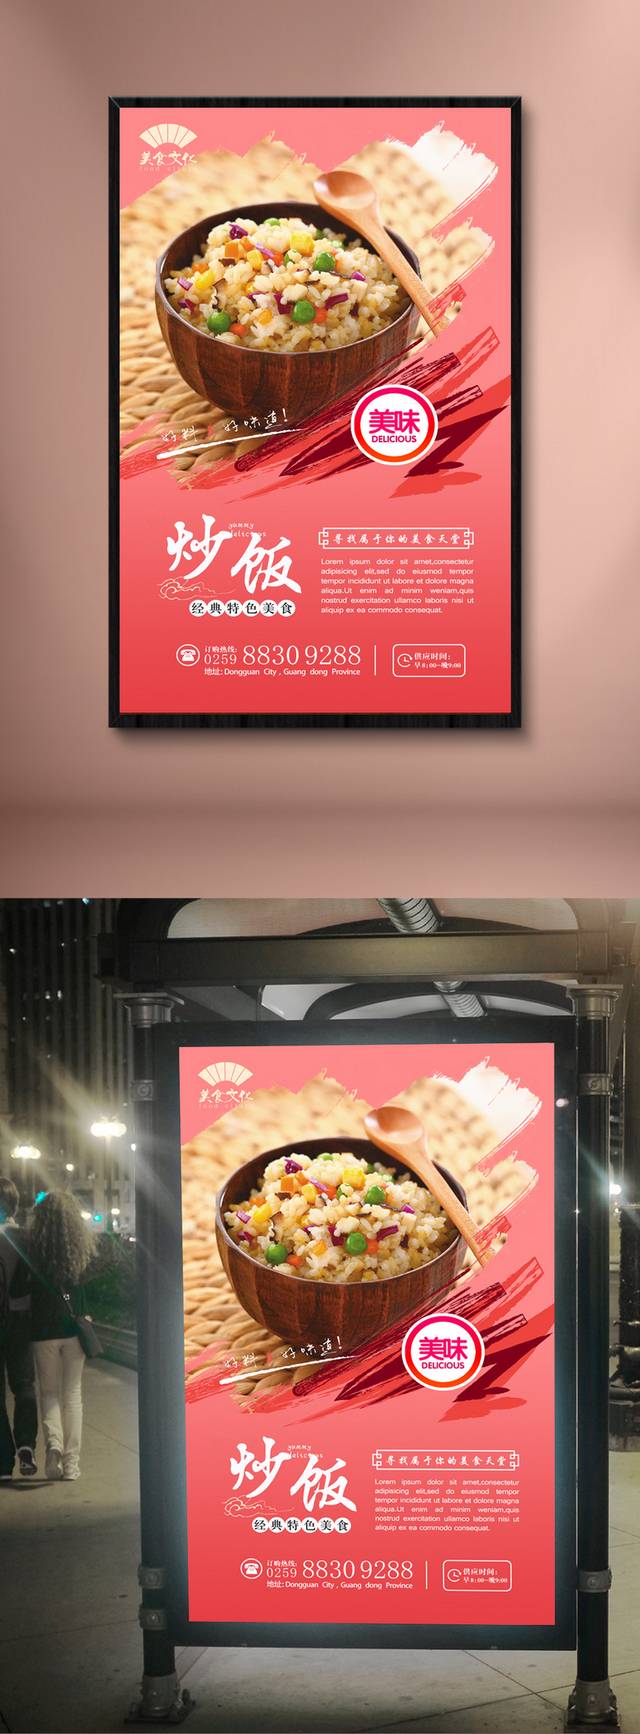 简约粉色炒饭宣传海报设计